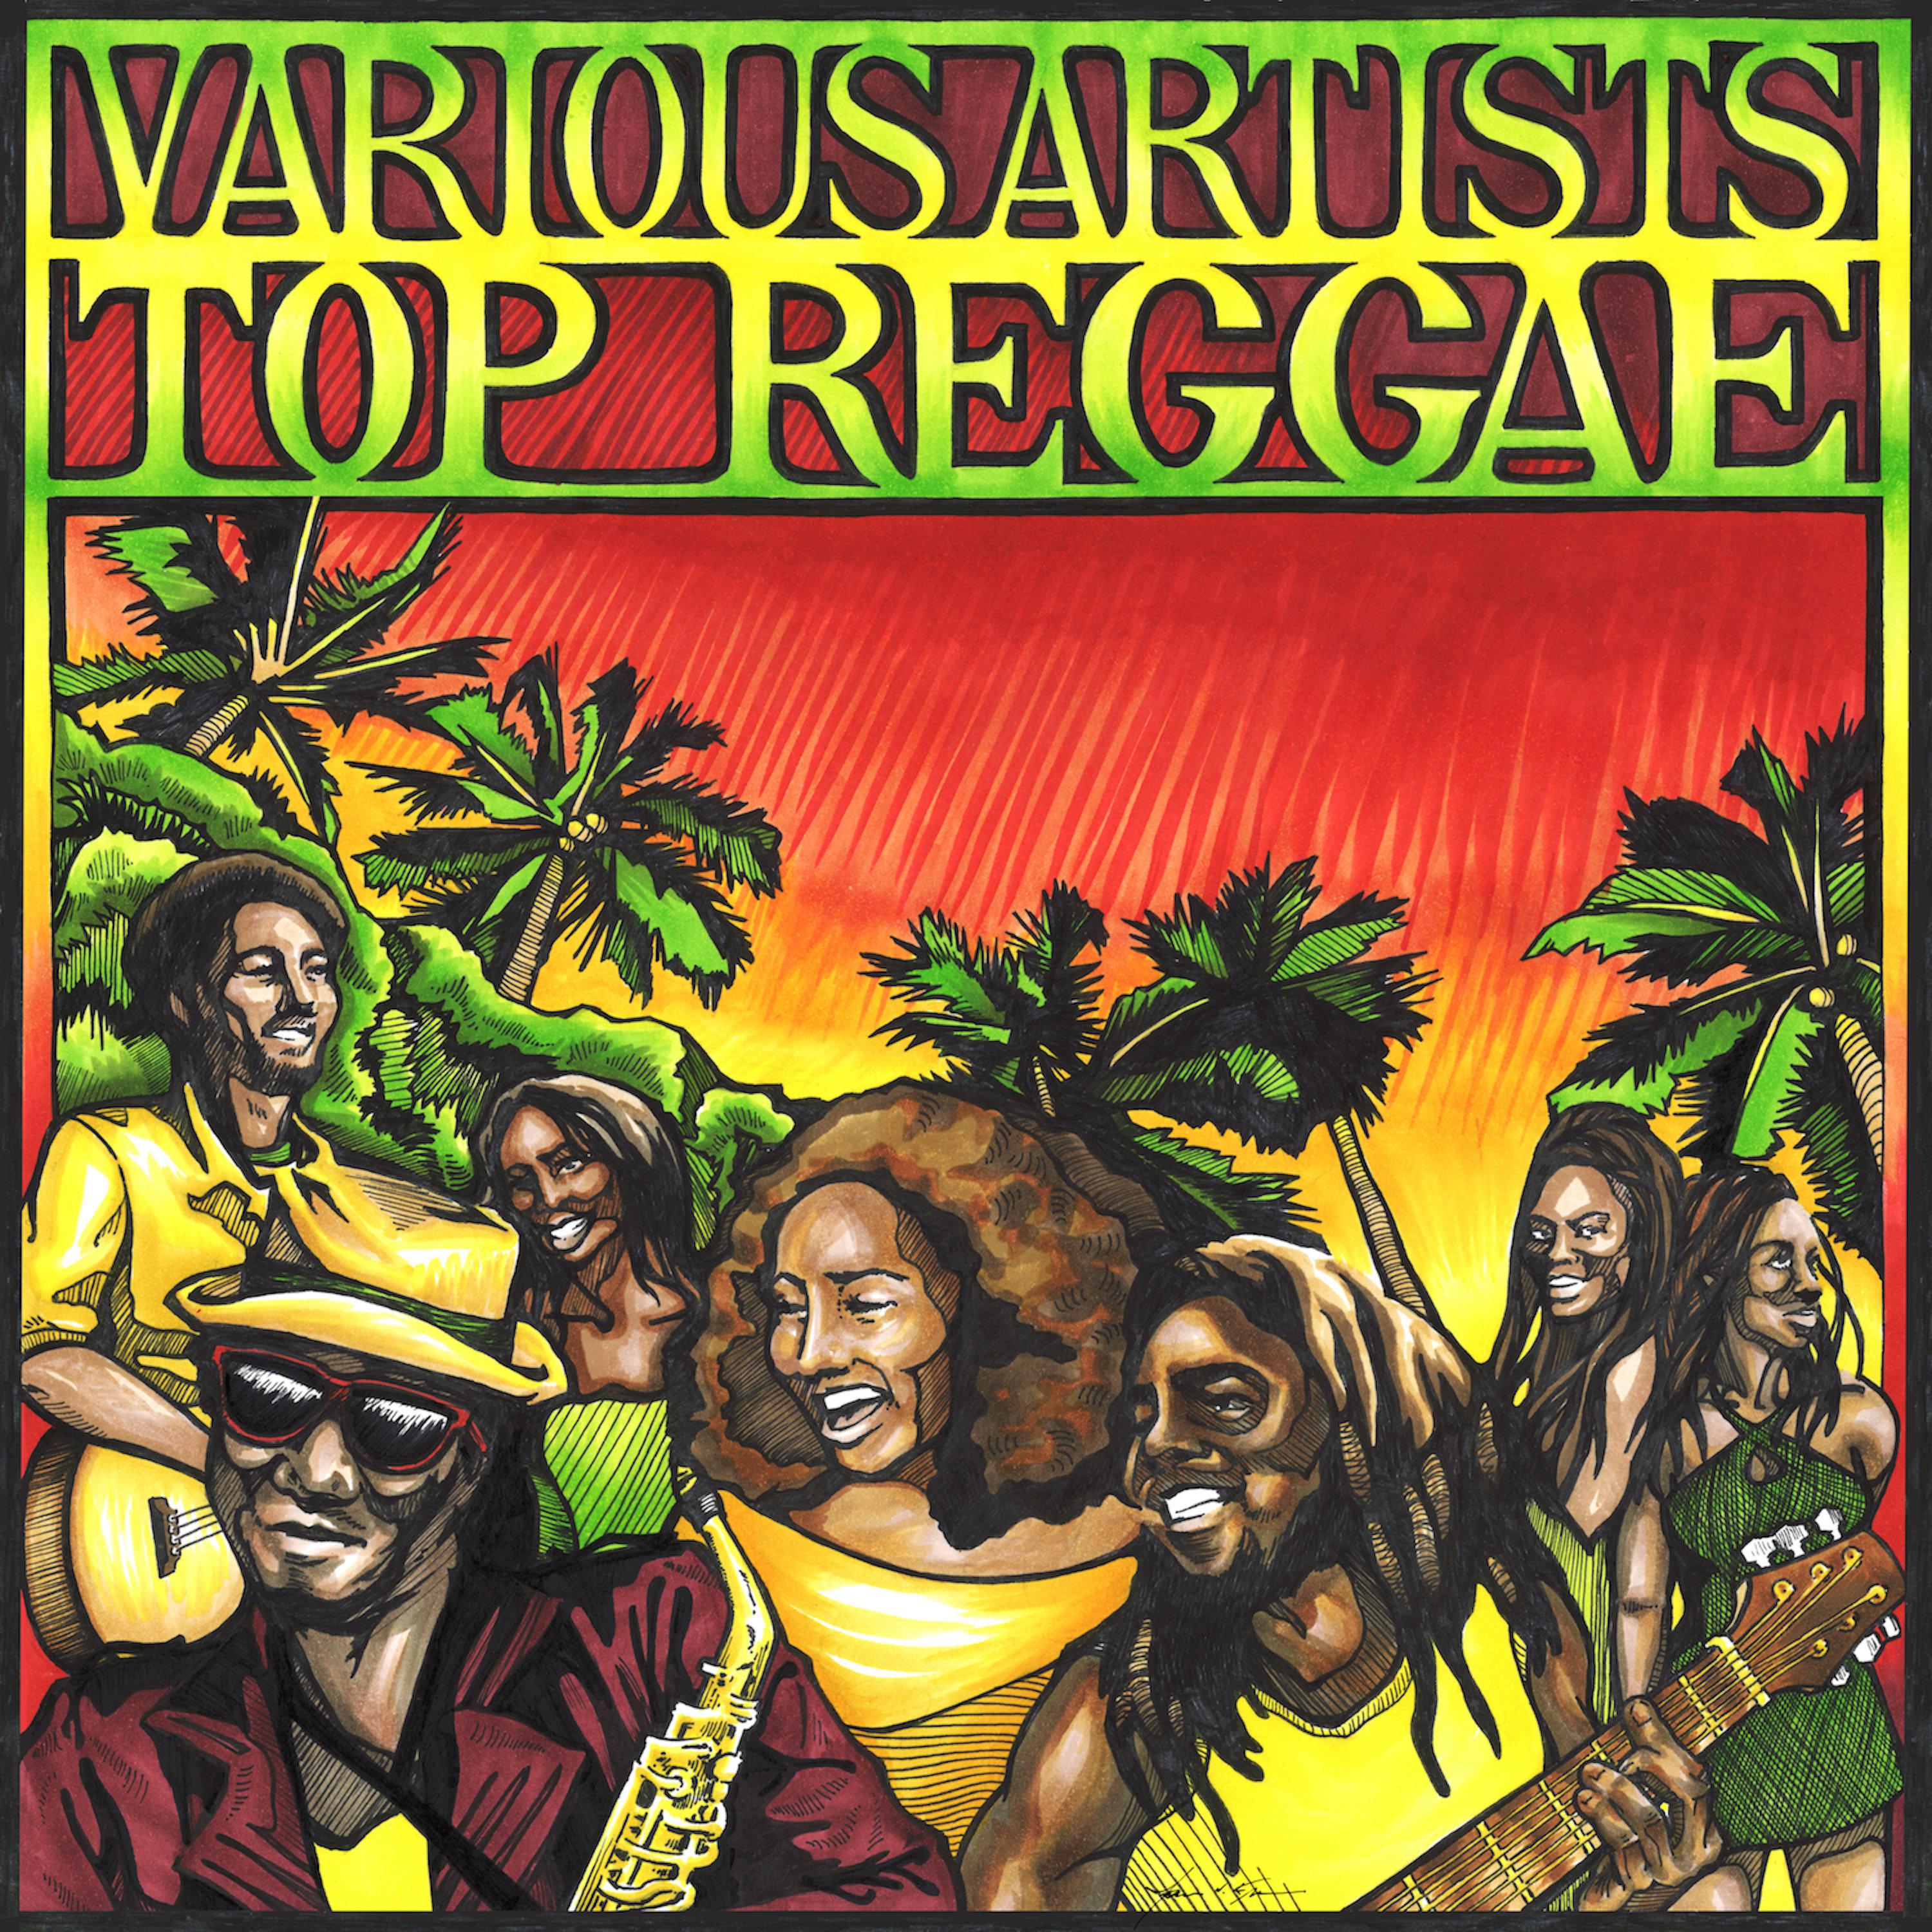 Top Reggae